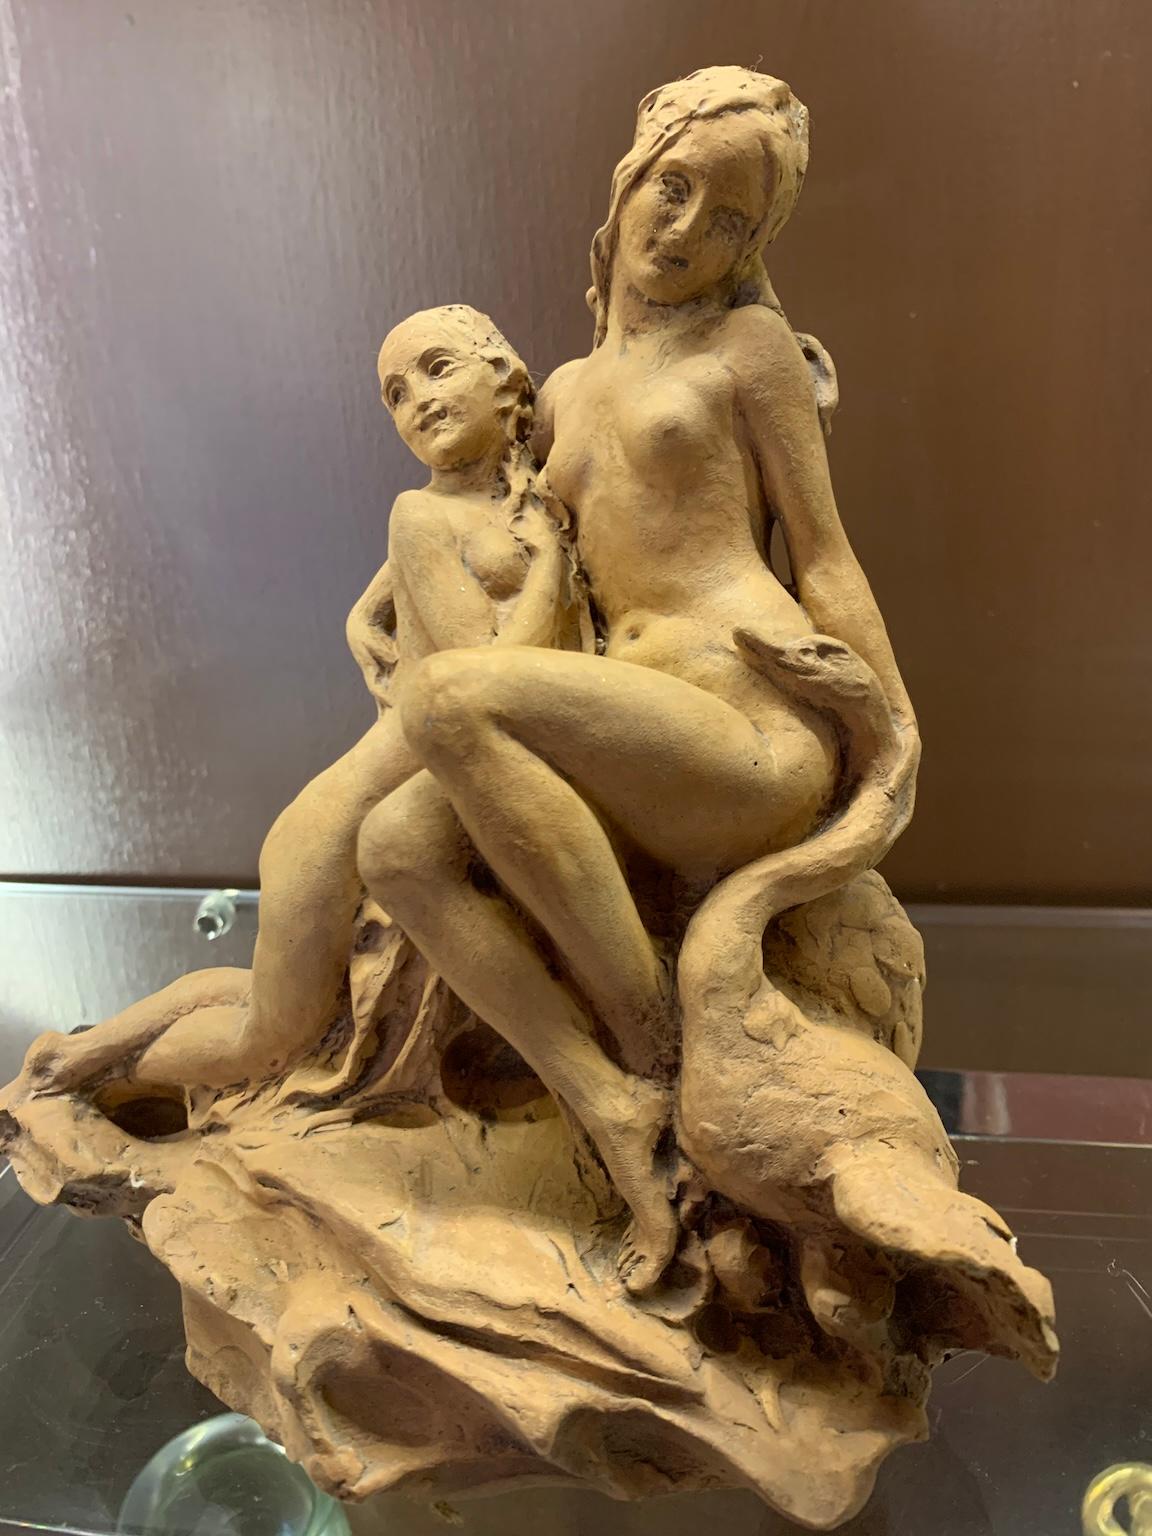 Ferrante Zambini Figurative Sculpture - Terracotta figurativa italiana a tema mitologico dei primi del Novecento